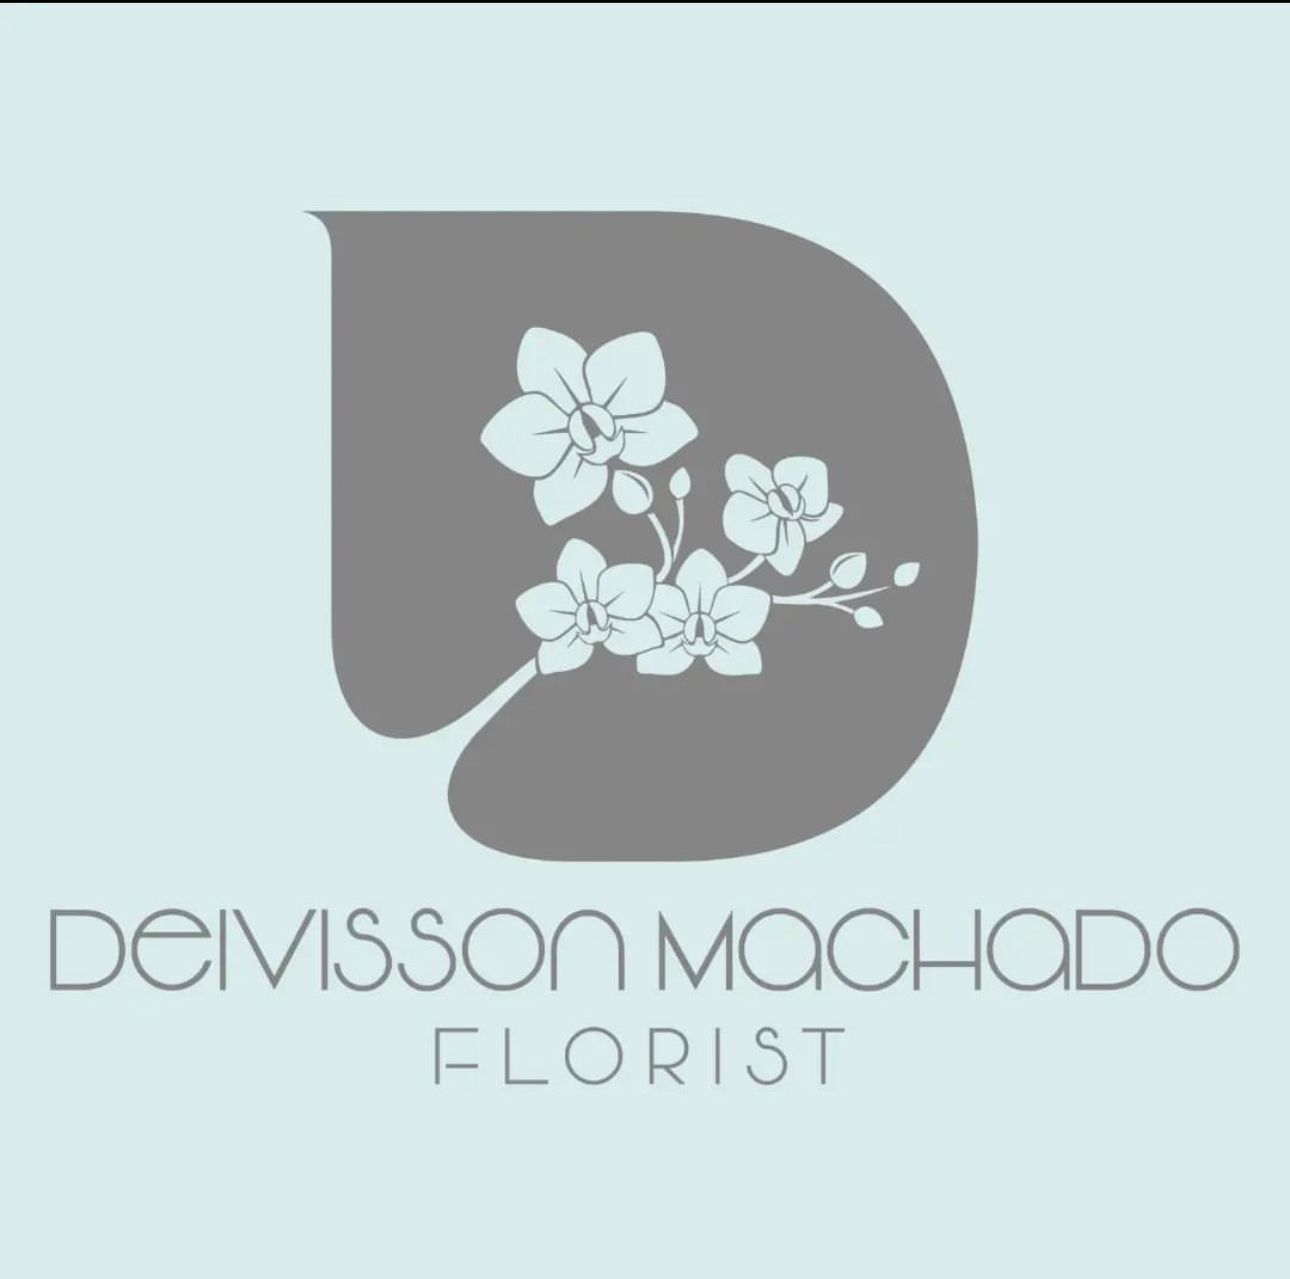 Deivisson Machado Florist